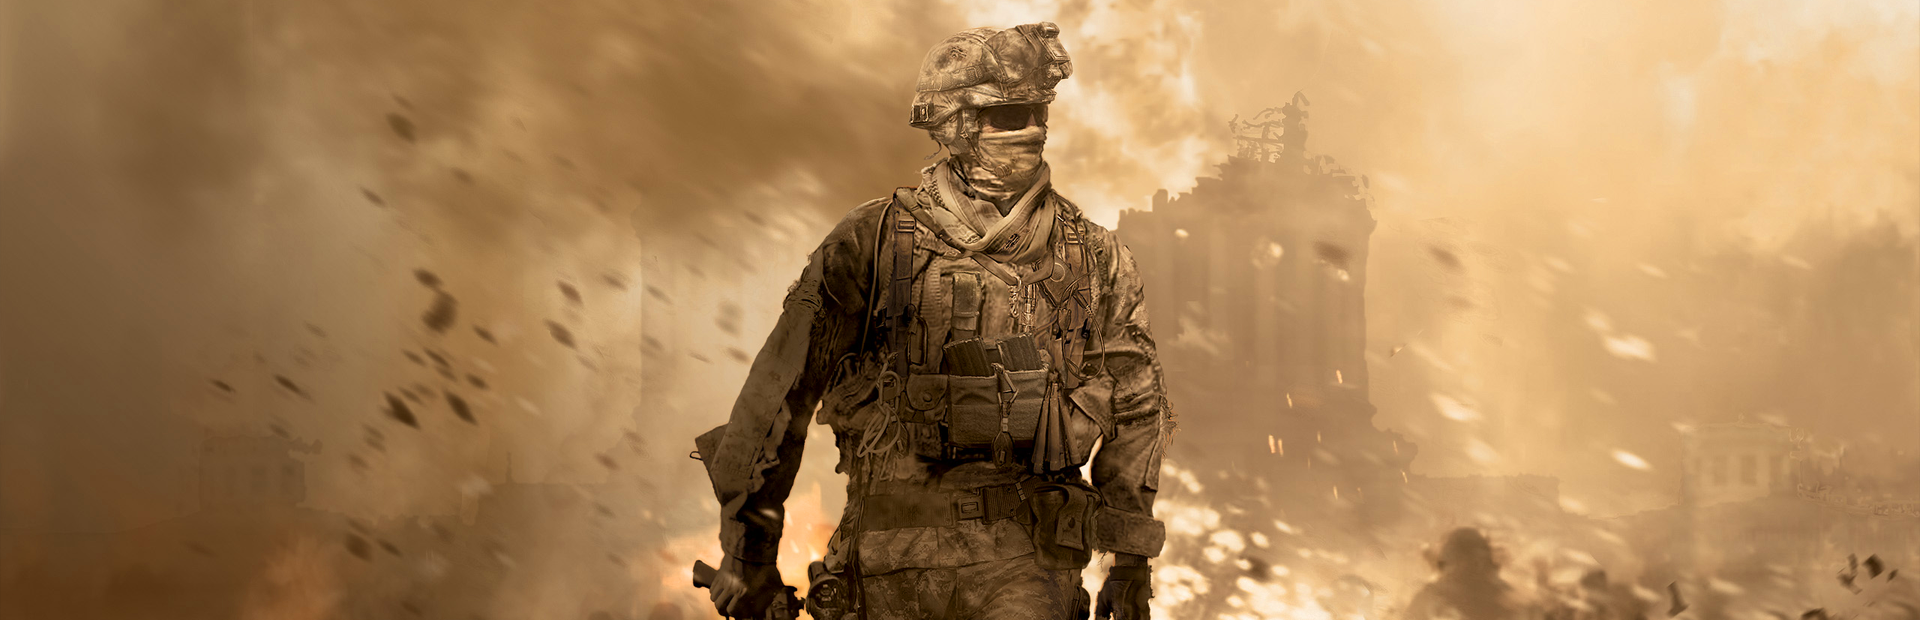 Call of Duty: Modern Warfare 2 - SteamGridDB